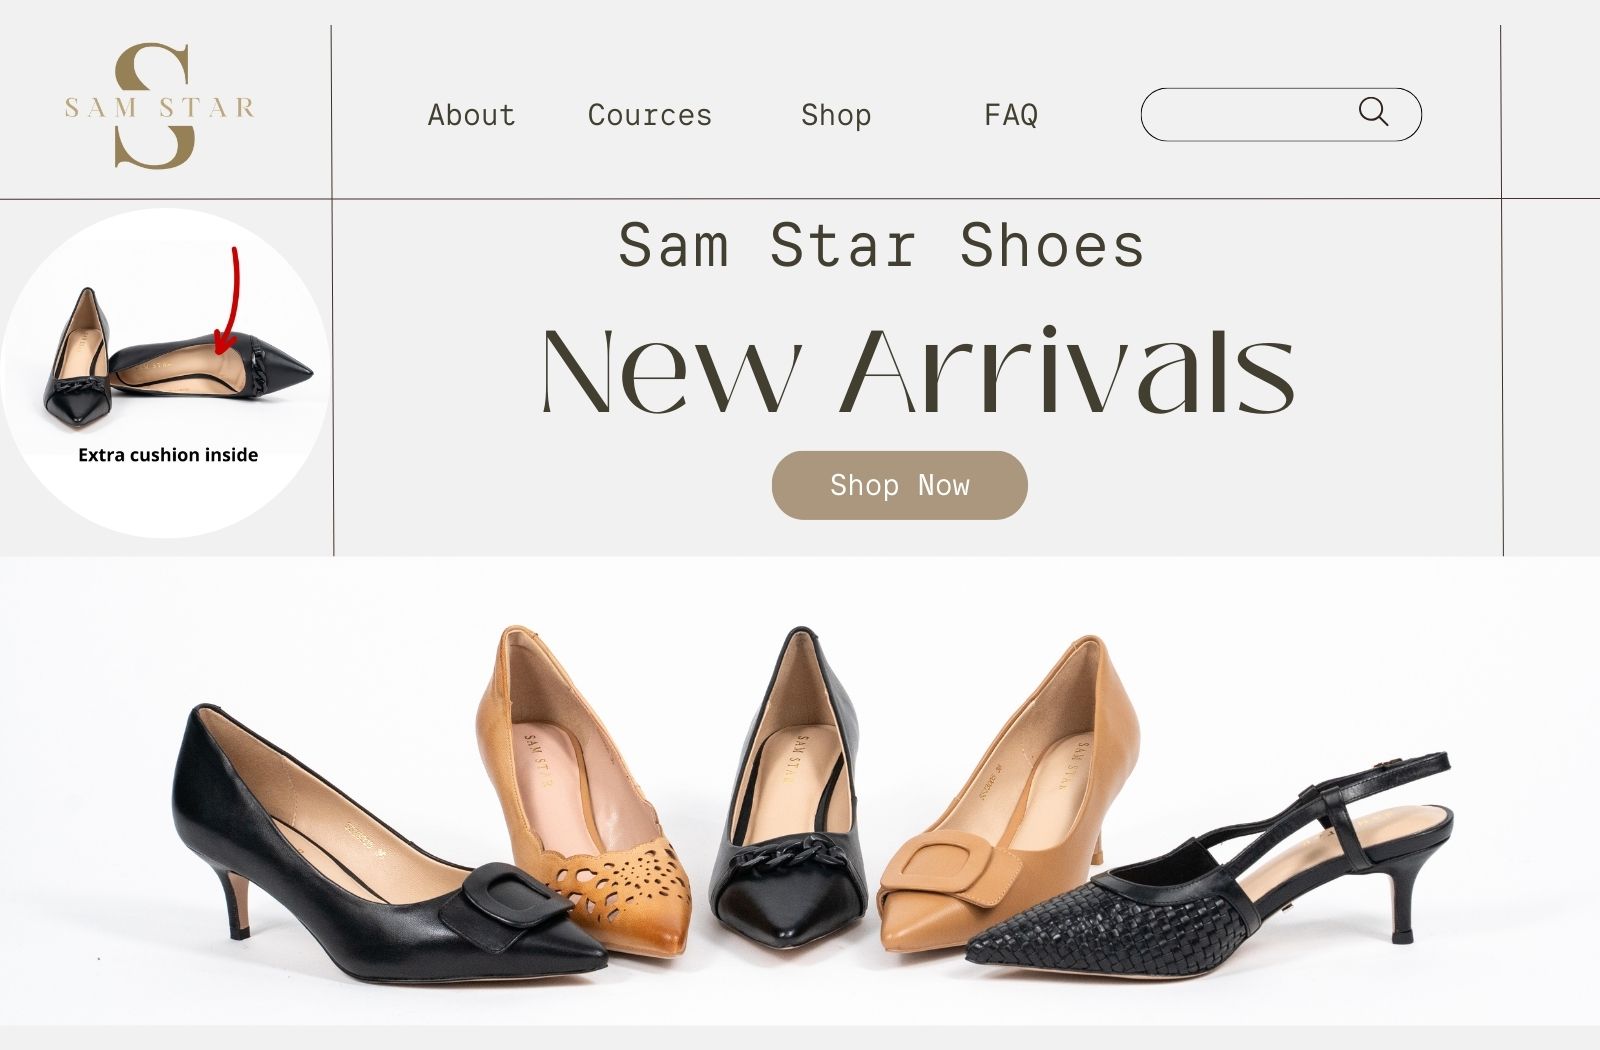 Sam Star Shoes – Sam Star Shoes